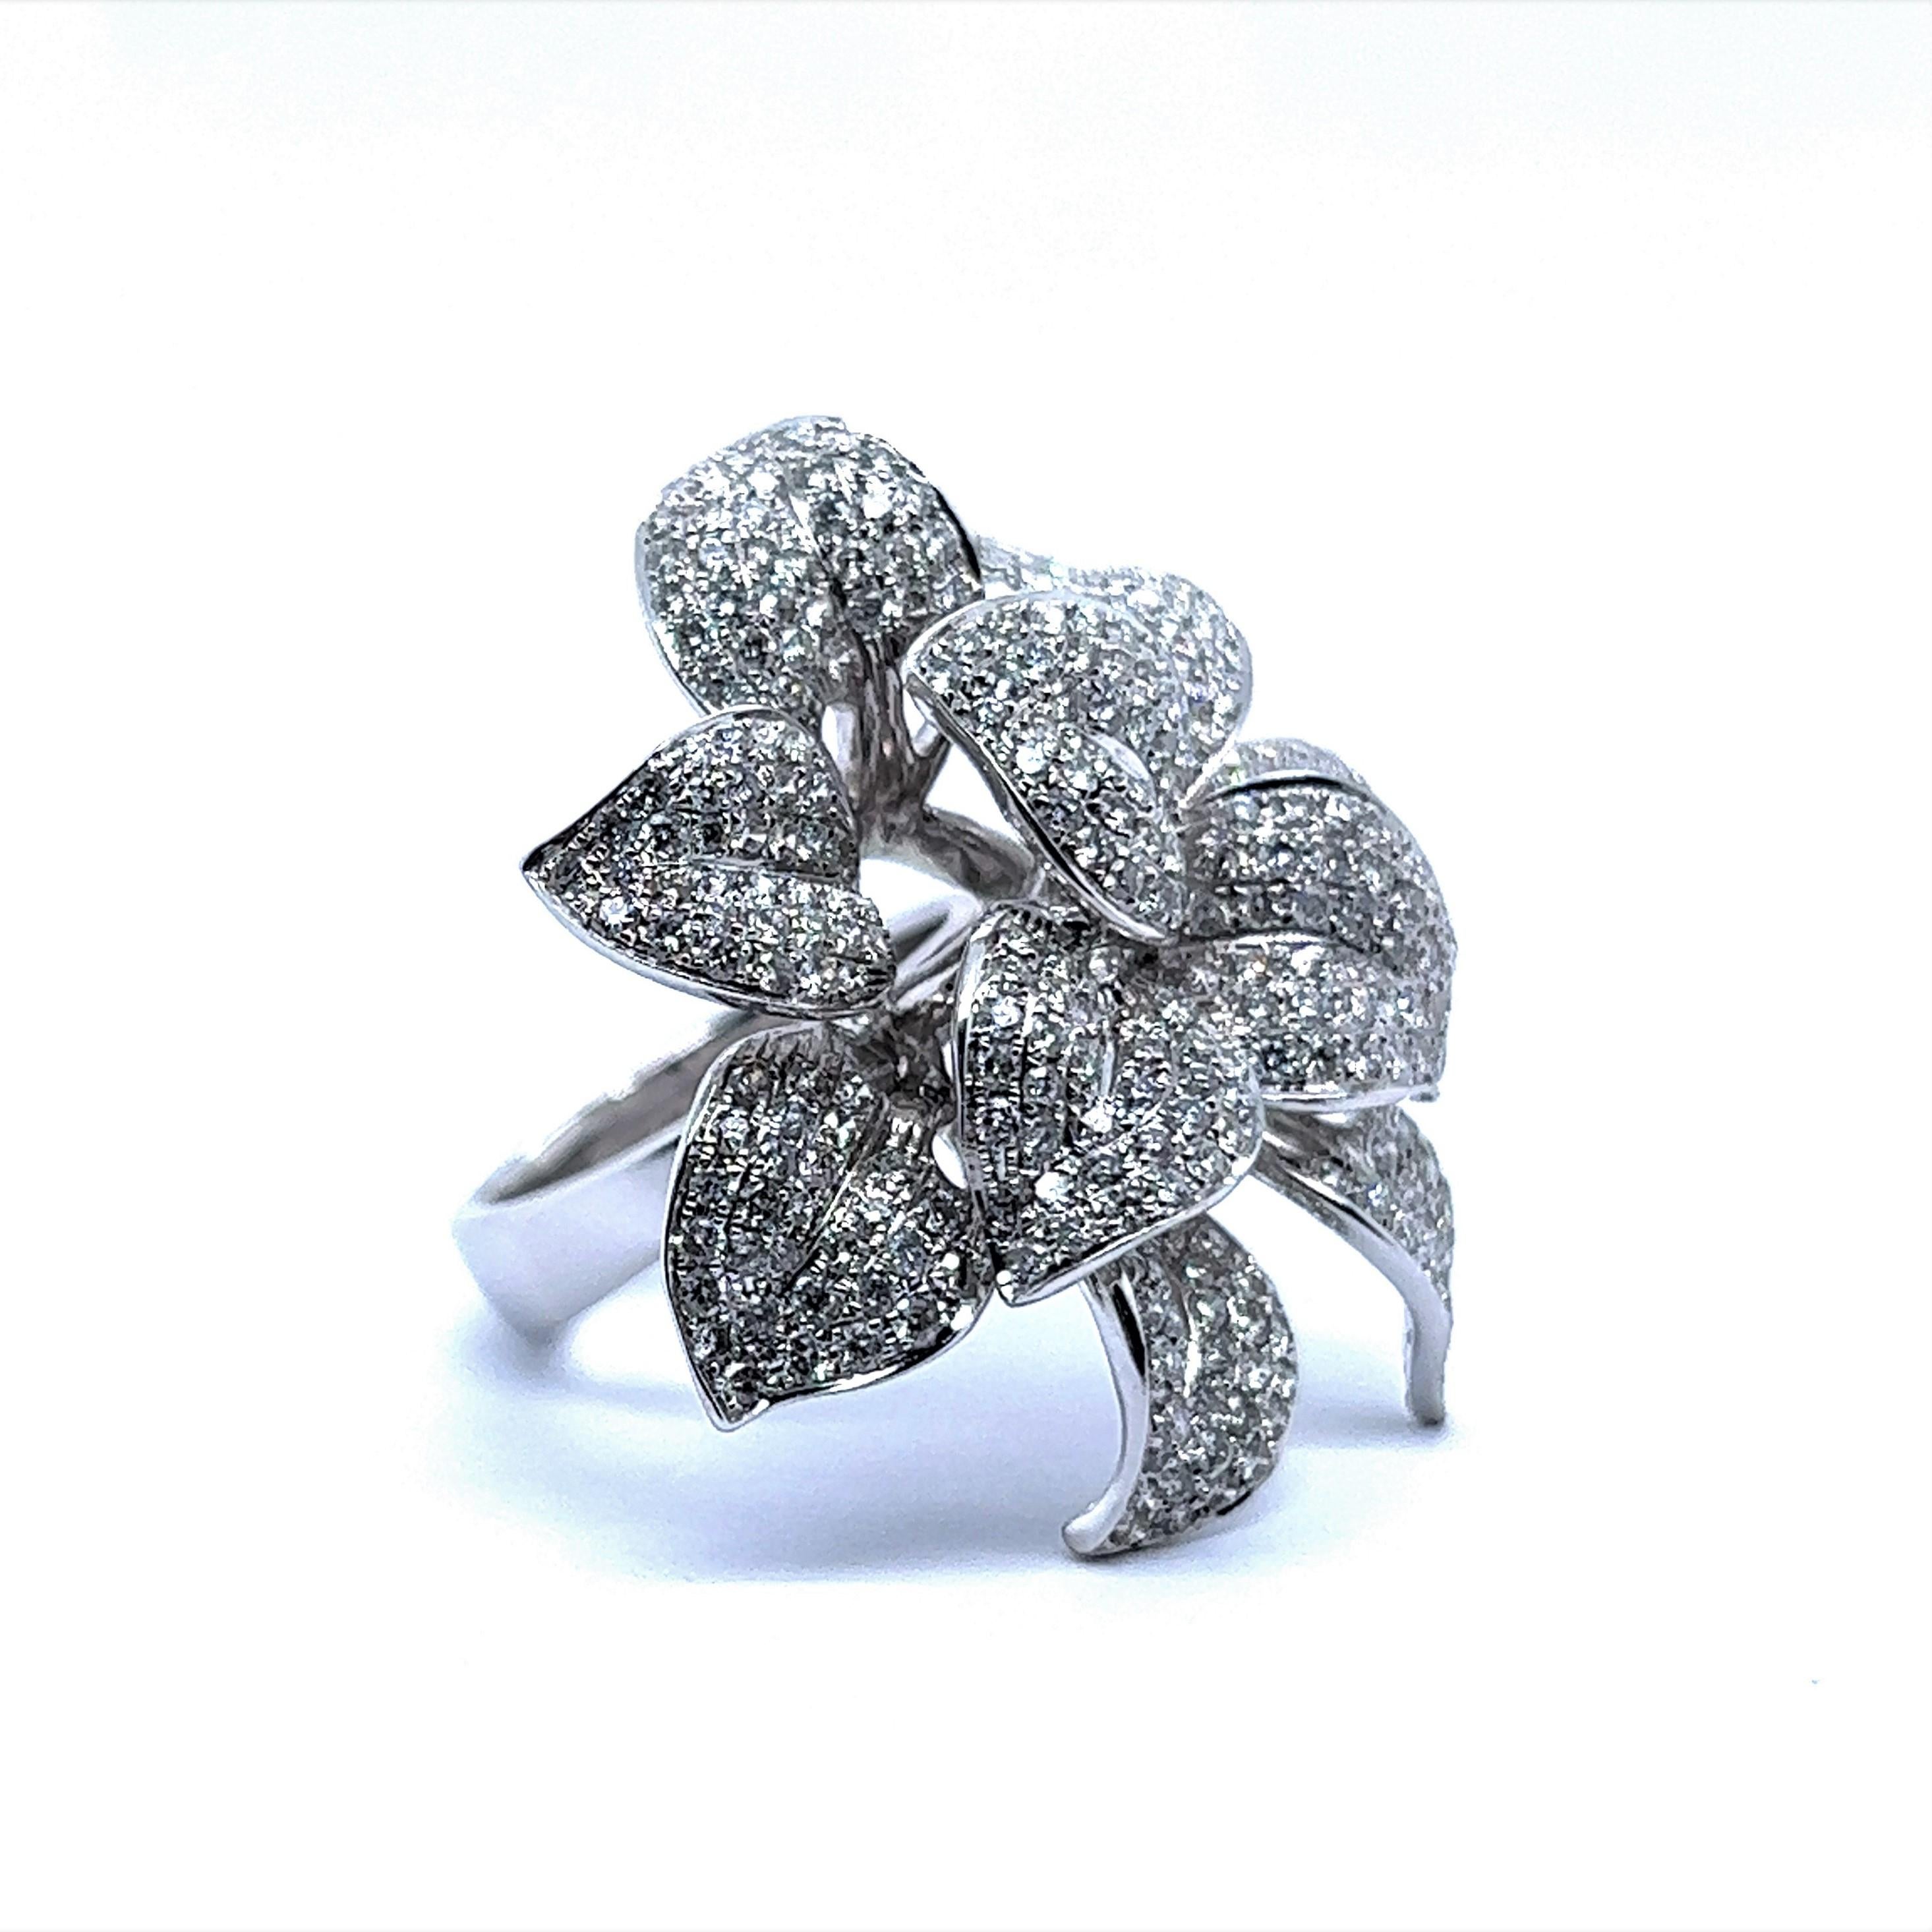 Dieser Diamantblumenring verkörpert nicht nur die Essenz des Stils, sondern ist auch ein Zeugnis für die zeitlose Anziehungskraft der Wunder der Natur.

Das Funkeln von 360 Diamanten im Brillantschliff erzeugt ein fesselndes Spiel aus Licht und